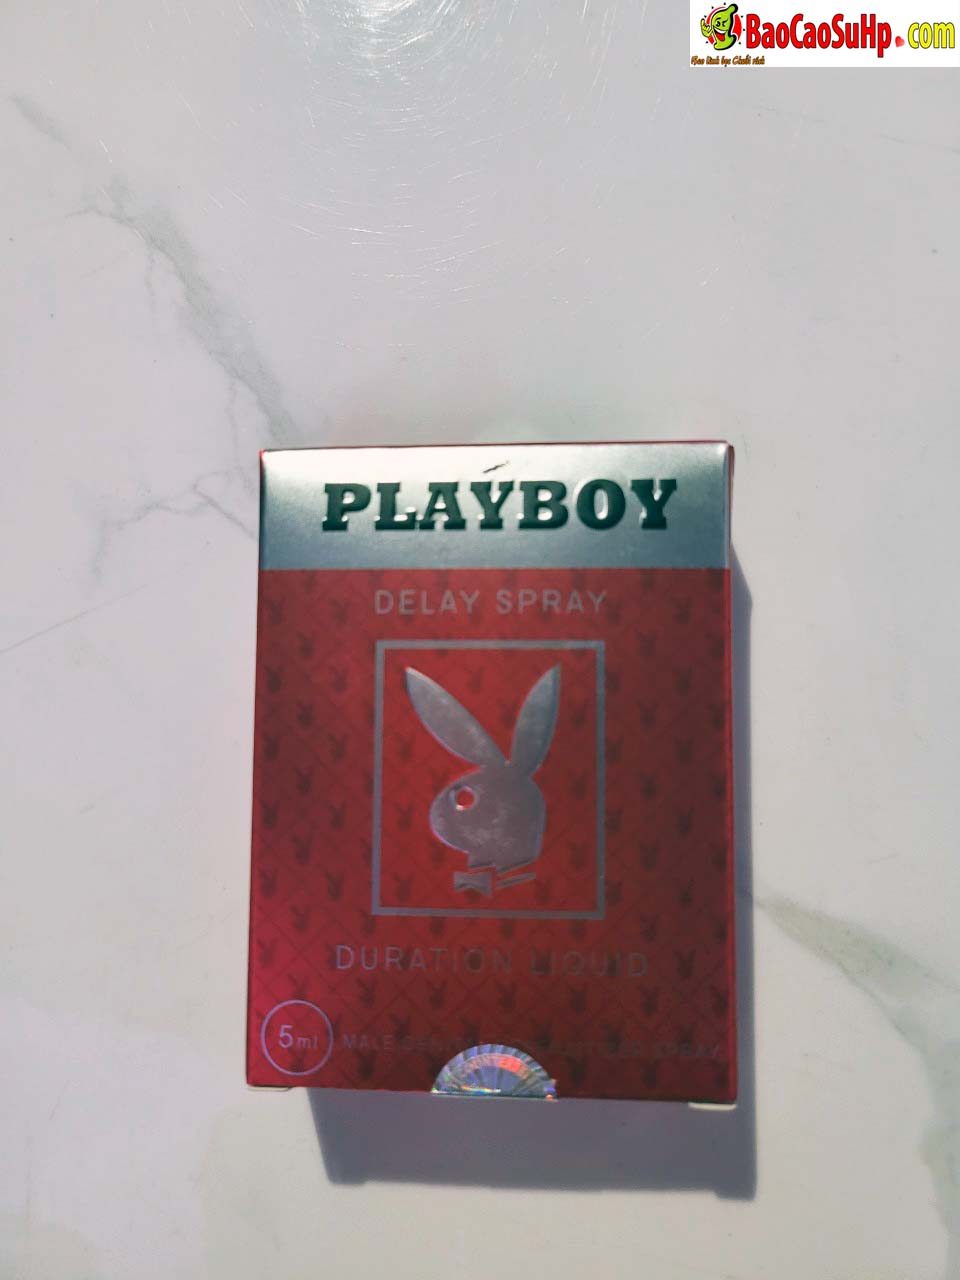 chai xit playboy red 2 1 - Chai xịt playboy Red Vid vitamin E đỏ kéo dài thời gian quan hệ mới